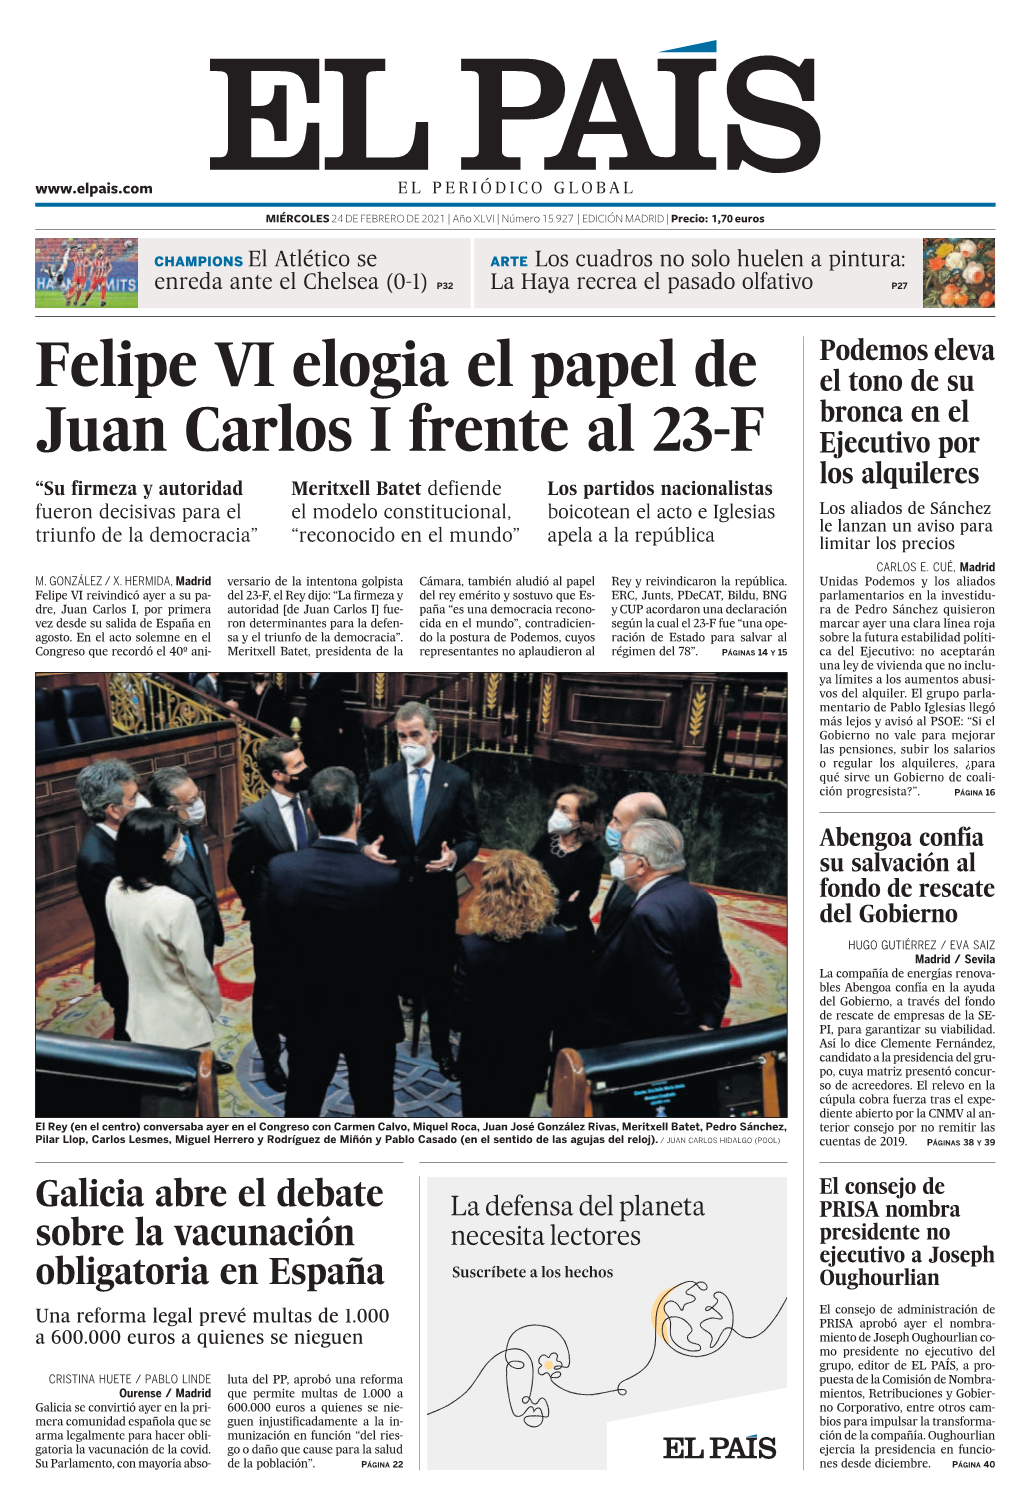 Felipe VI Elogia El Papel De Juan Carlos I Frente Al 23-F